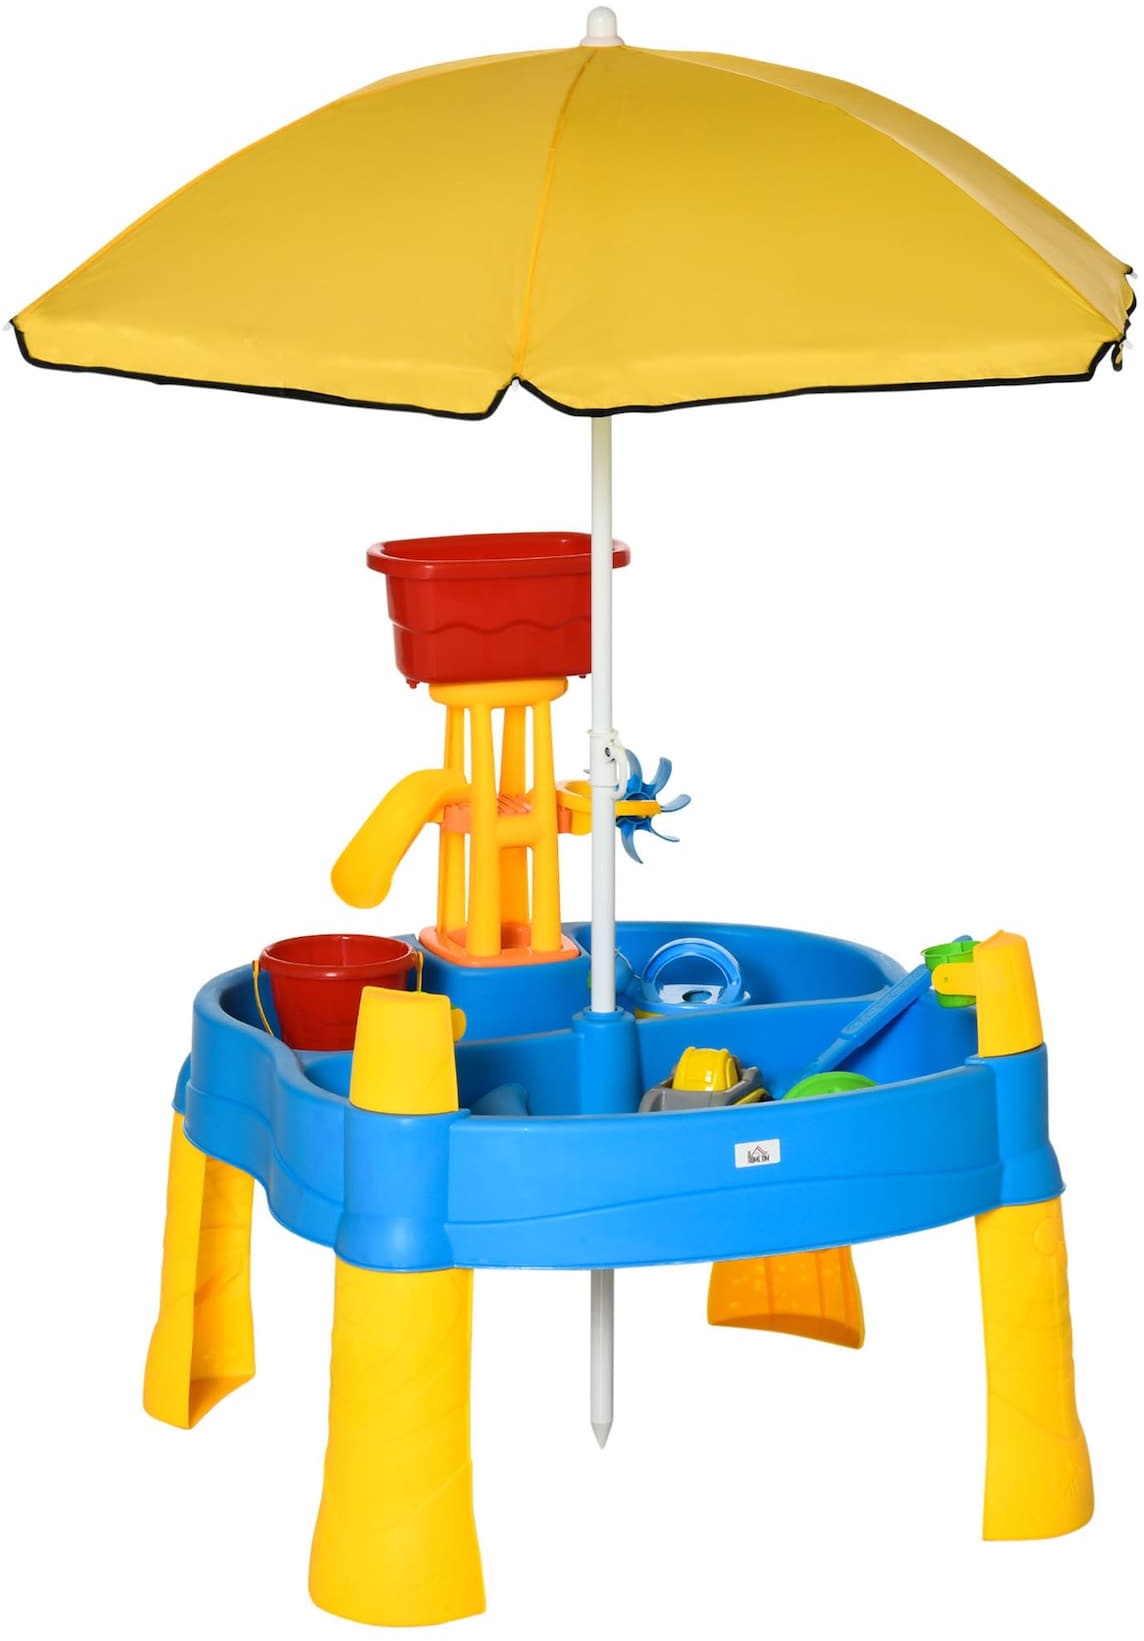 HOMCOM Sandspielzeug mit Sonnenschirm bunt 72,5L x 78B x 81,5H cm   spieltisch baby  spieltisch ab 1 jahr  babyspielzeug ab 1 jahr